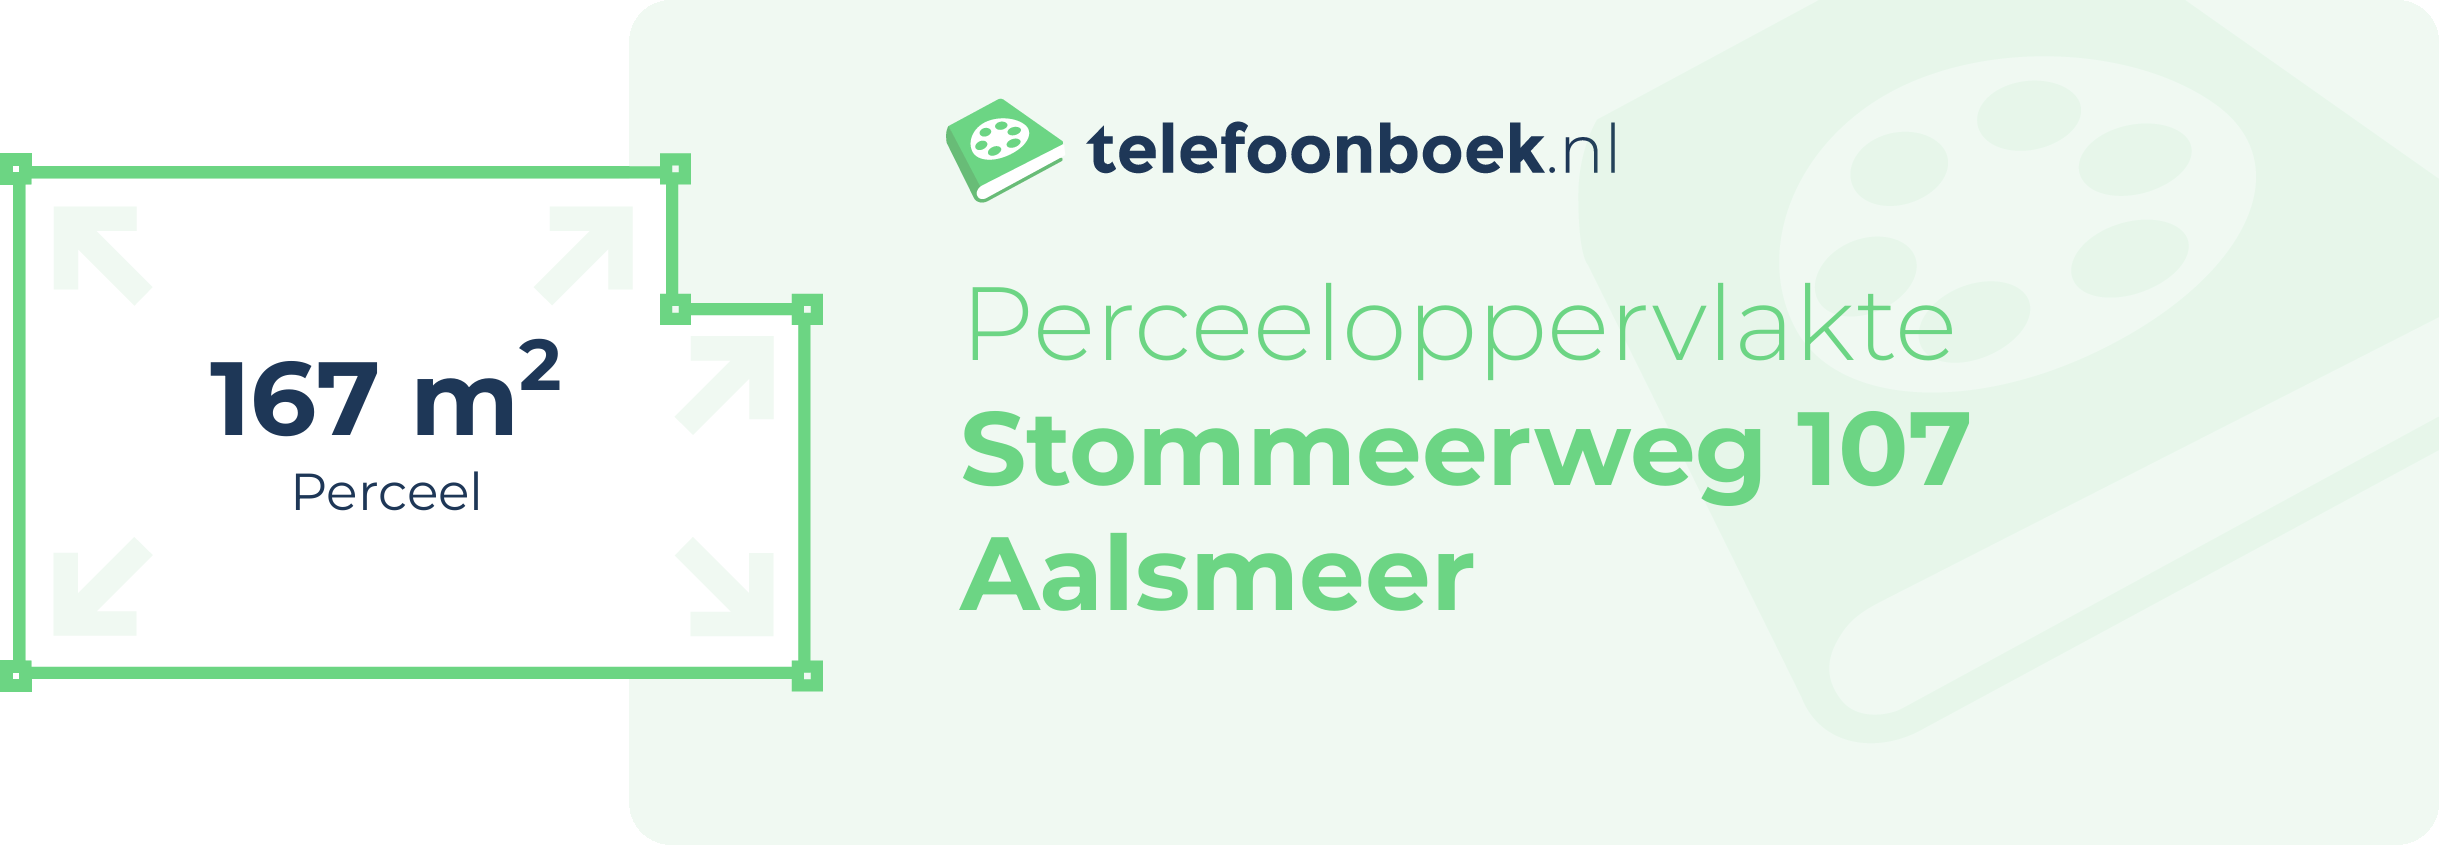 Perceeloppervlakte Stommeerweg 107 Aalsmeer